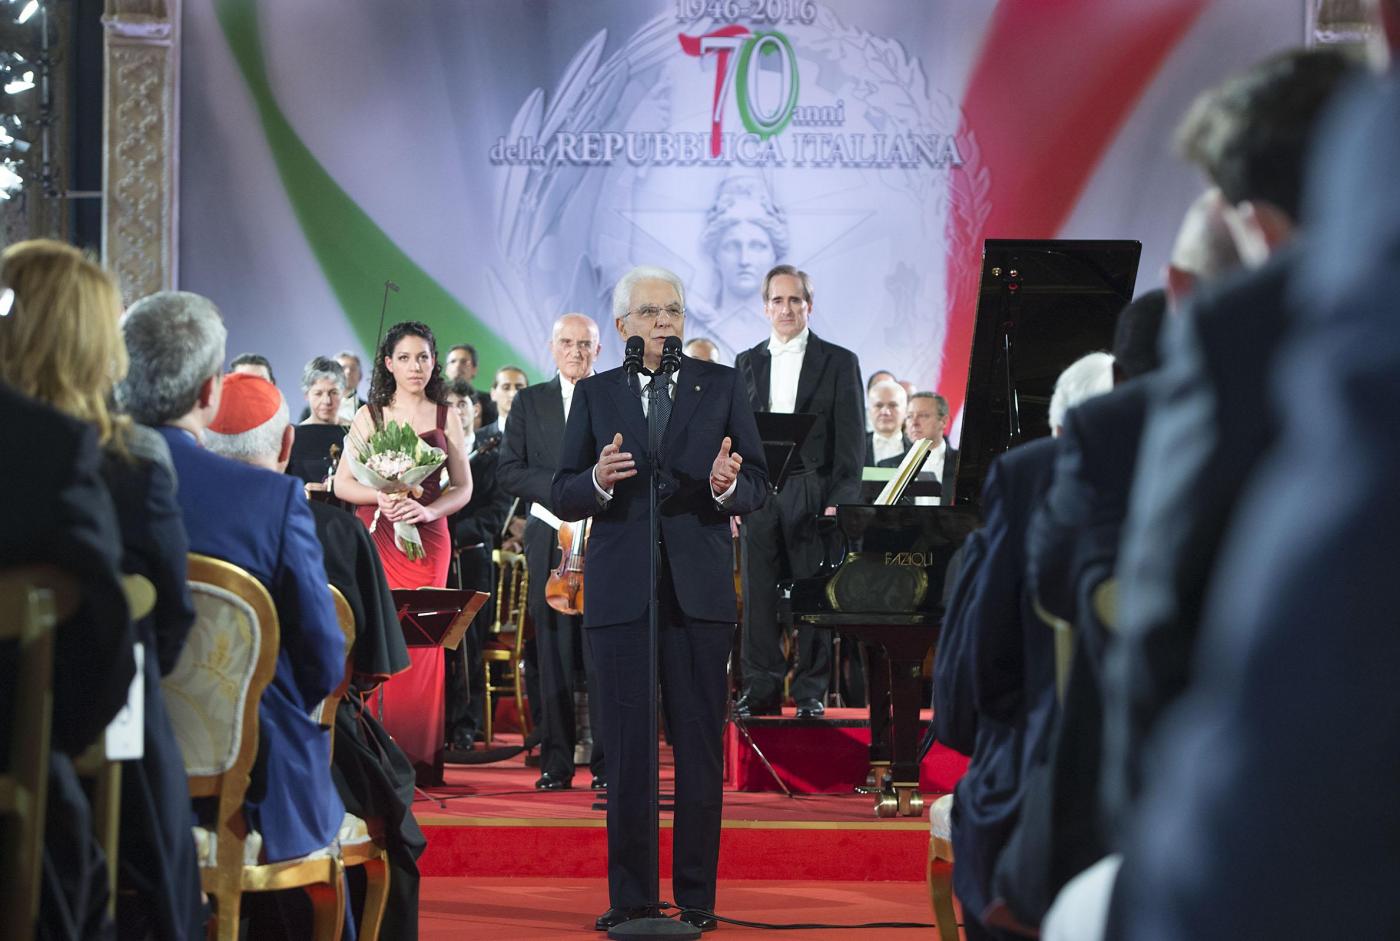 Quirinale concerto per celebrare i 70 anni della Repubblica Italiana